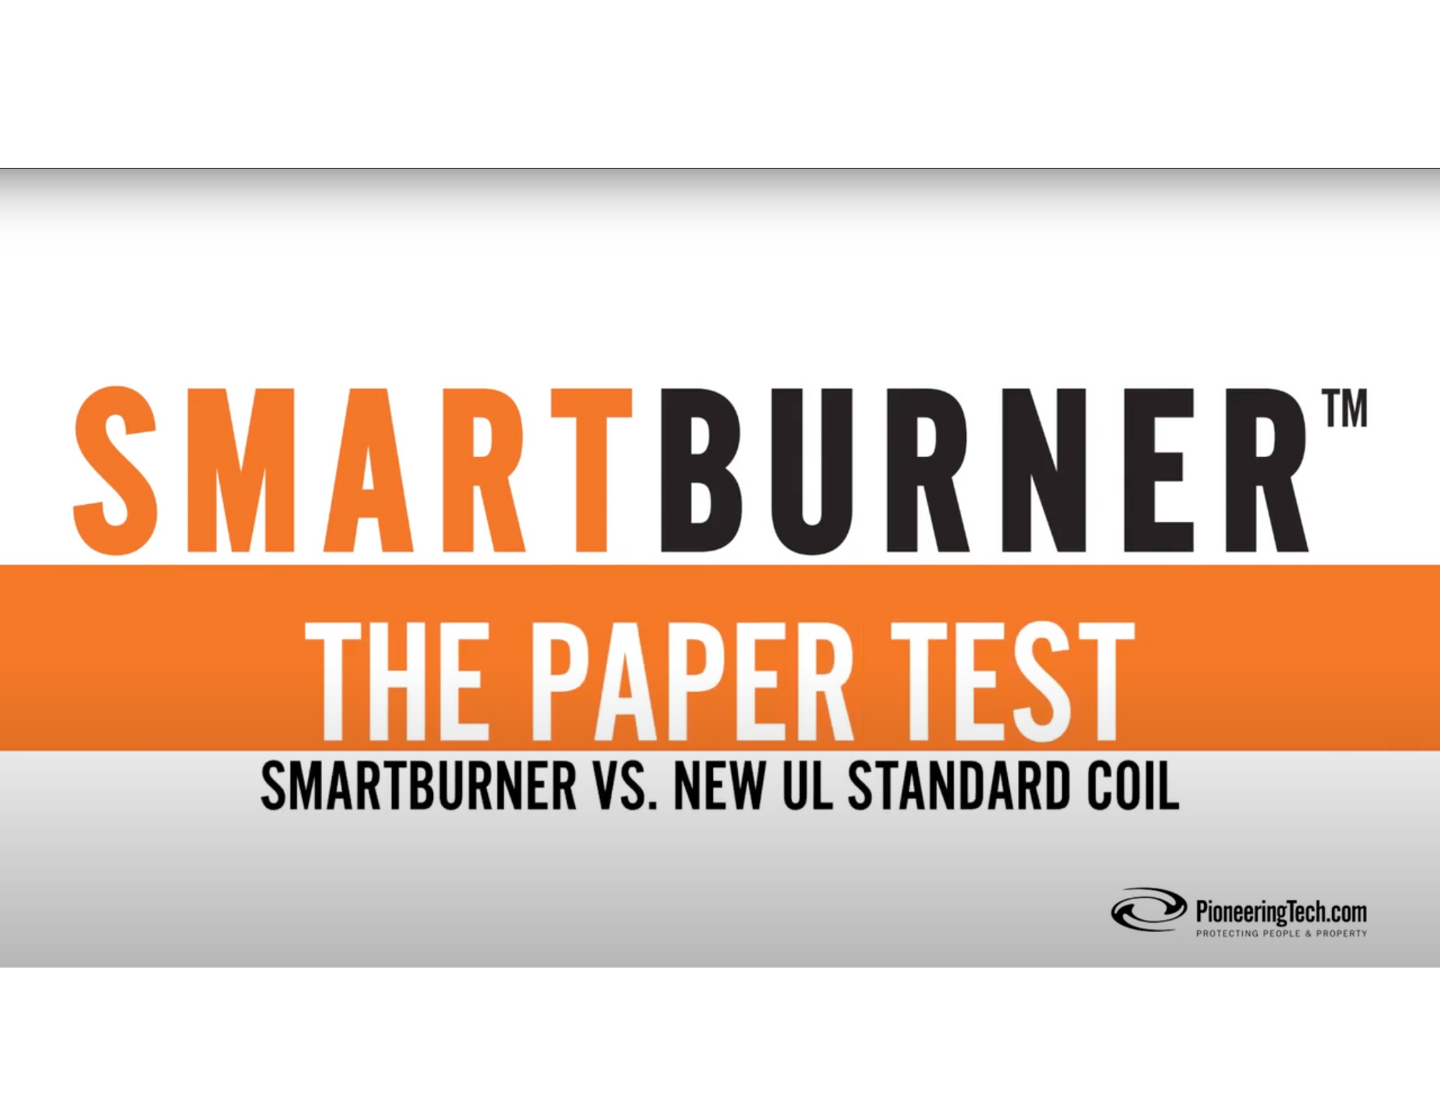 SmartBurner: The Paper Test